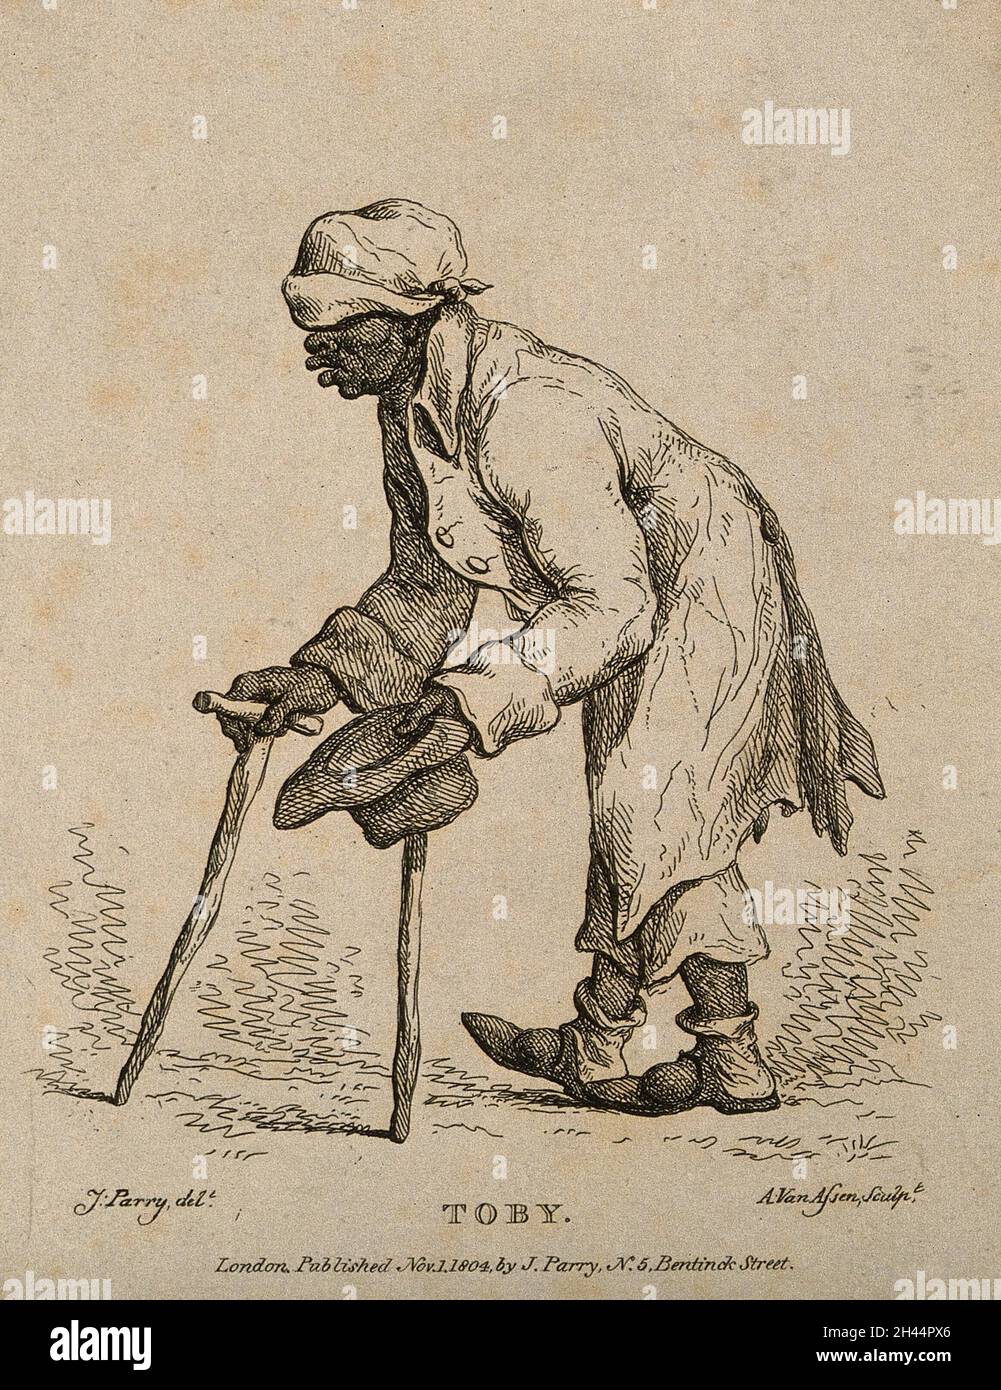 Toby, ein Mann, der vorgab, blind und lahm zu sein. Radierung von A. van Assen, 1804, nach J. Parry. Stockfoto